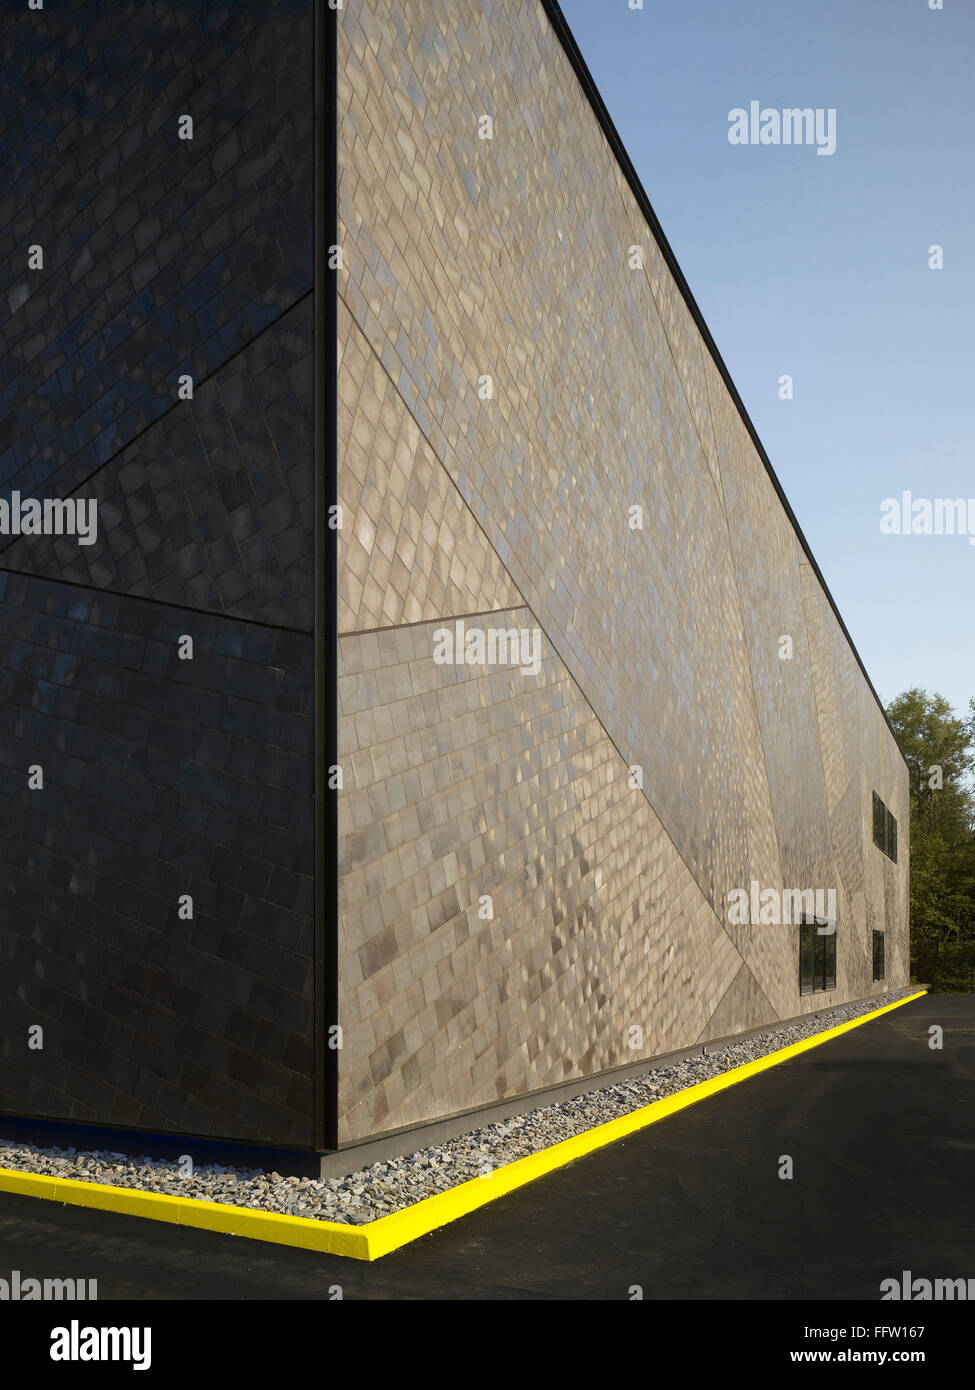 Perspective de la façade. Centre aérospatial allemand (DLR), Brême, Allemagne. Architecte : Kister Scheithauer, brut 2012. Banque D'Images